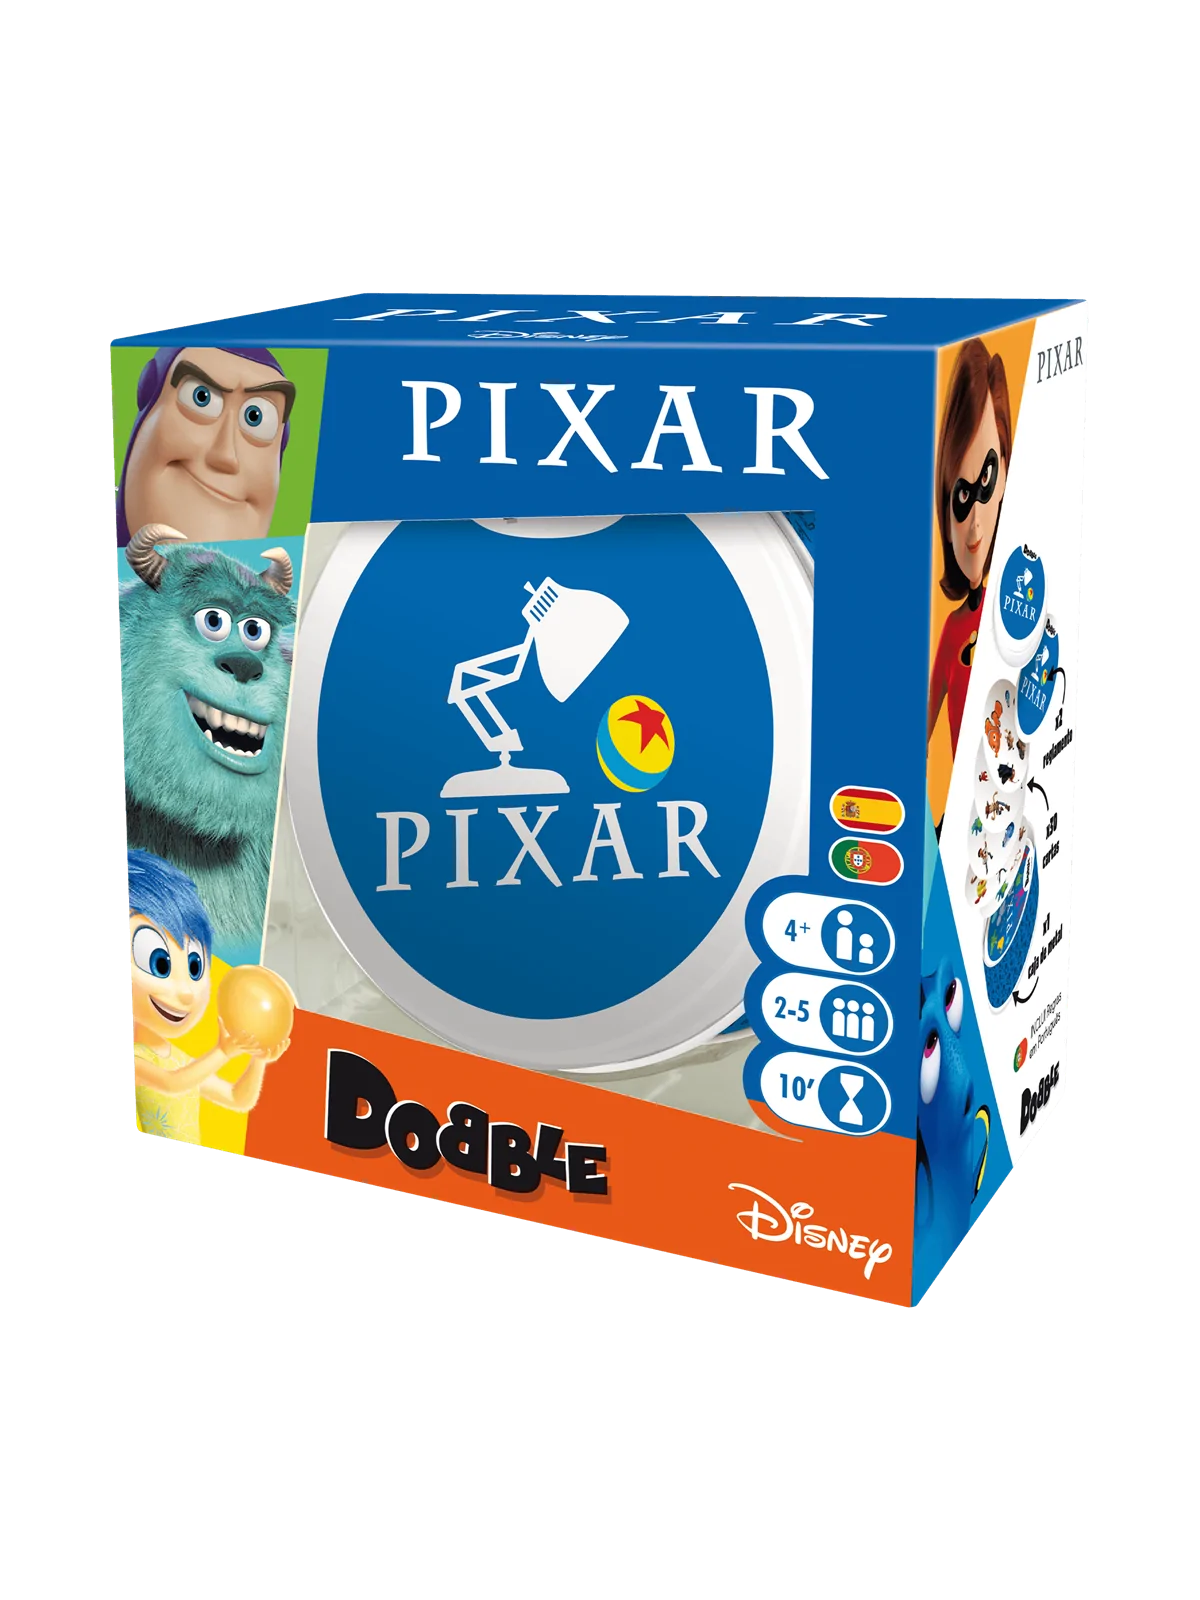 Comprar Dobble Pixar barato al mejor precio 13,59 € de Zygomatic